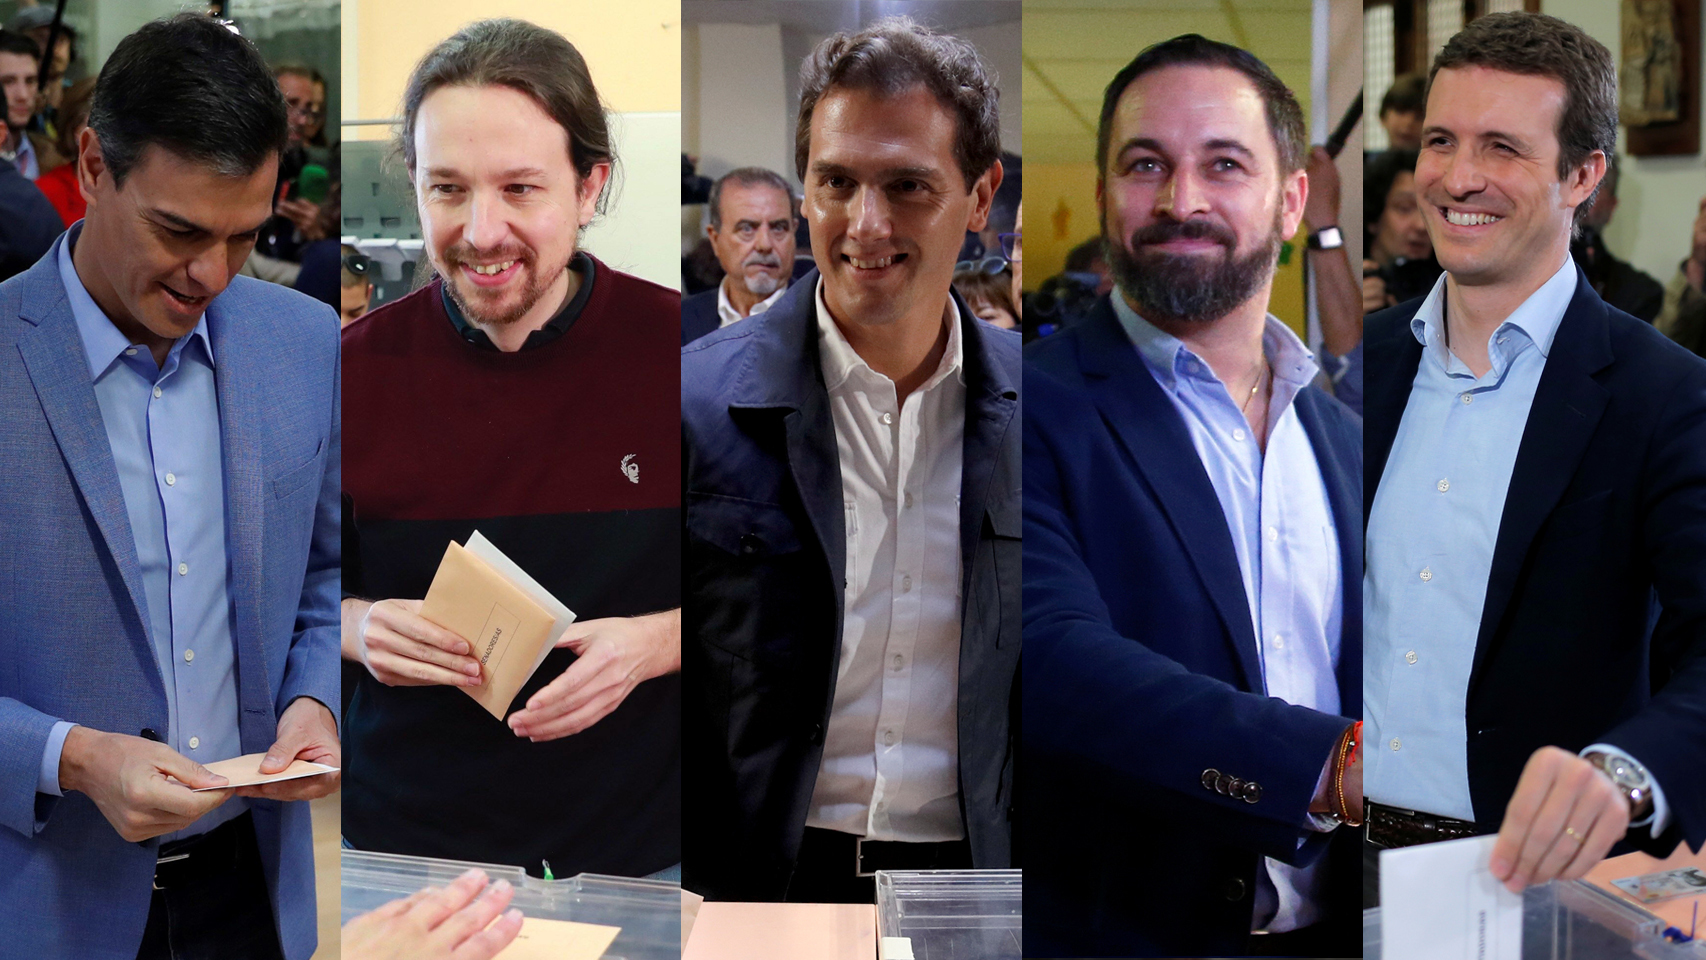 Los cinco candidatos ya han votado en una jornada decisiva para la democracia.